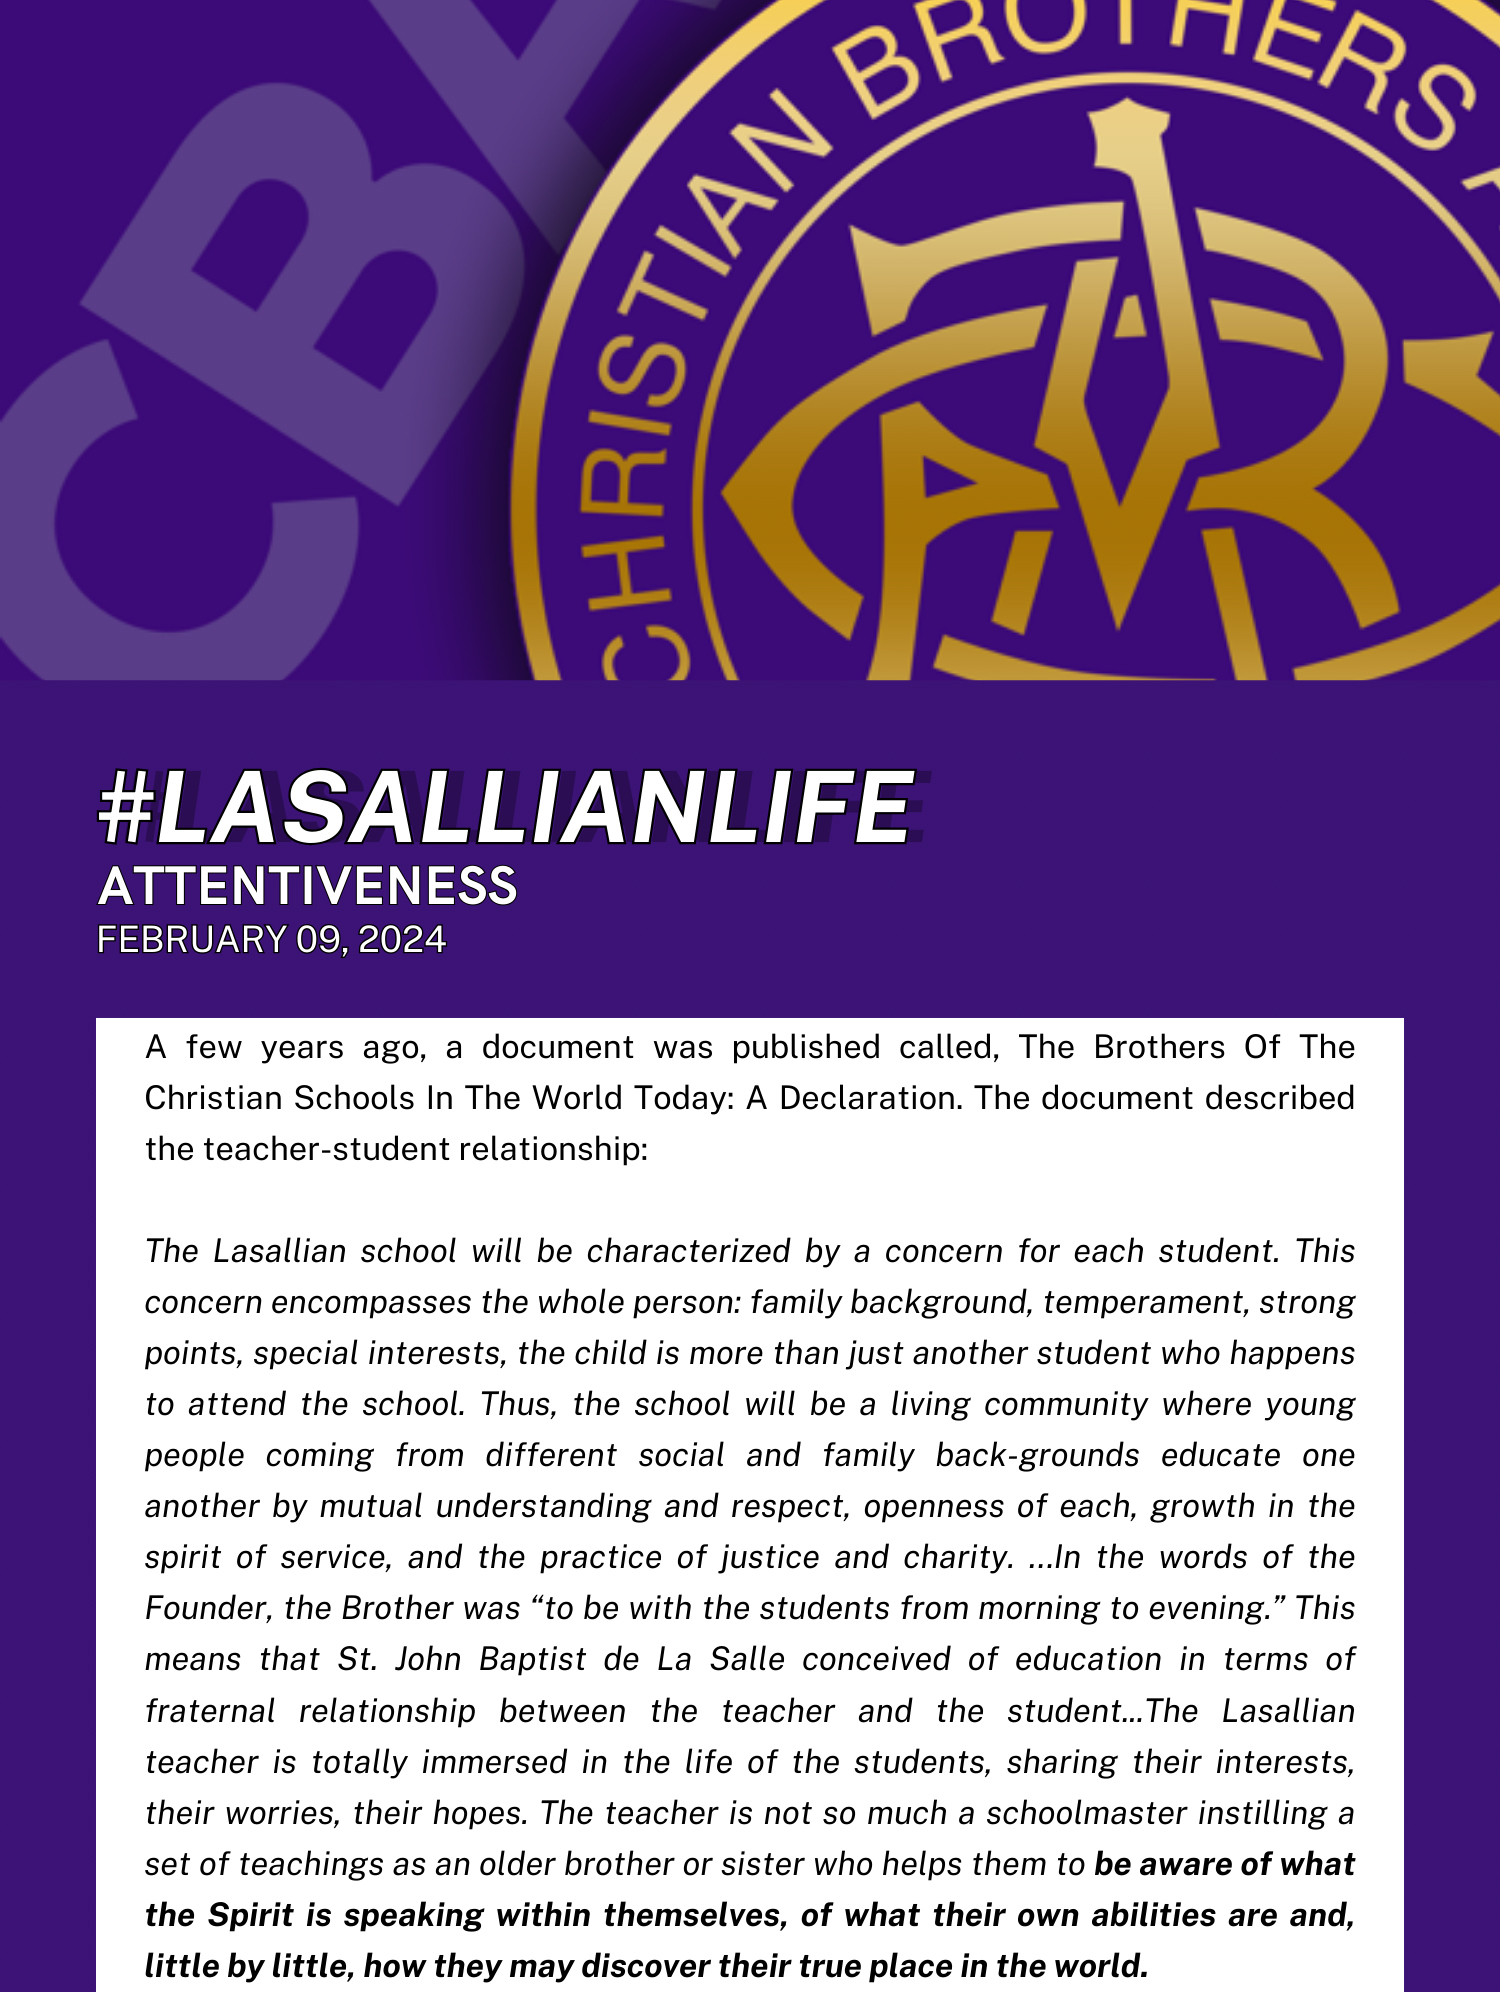 #LasallianLife : Attentiveness